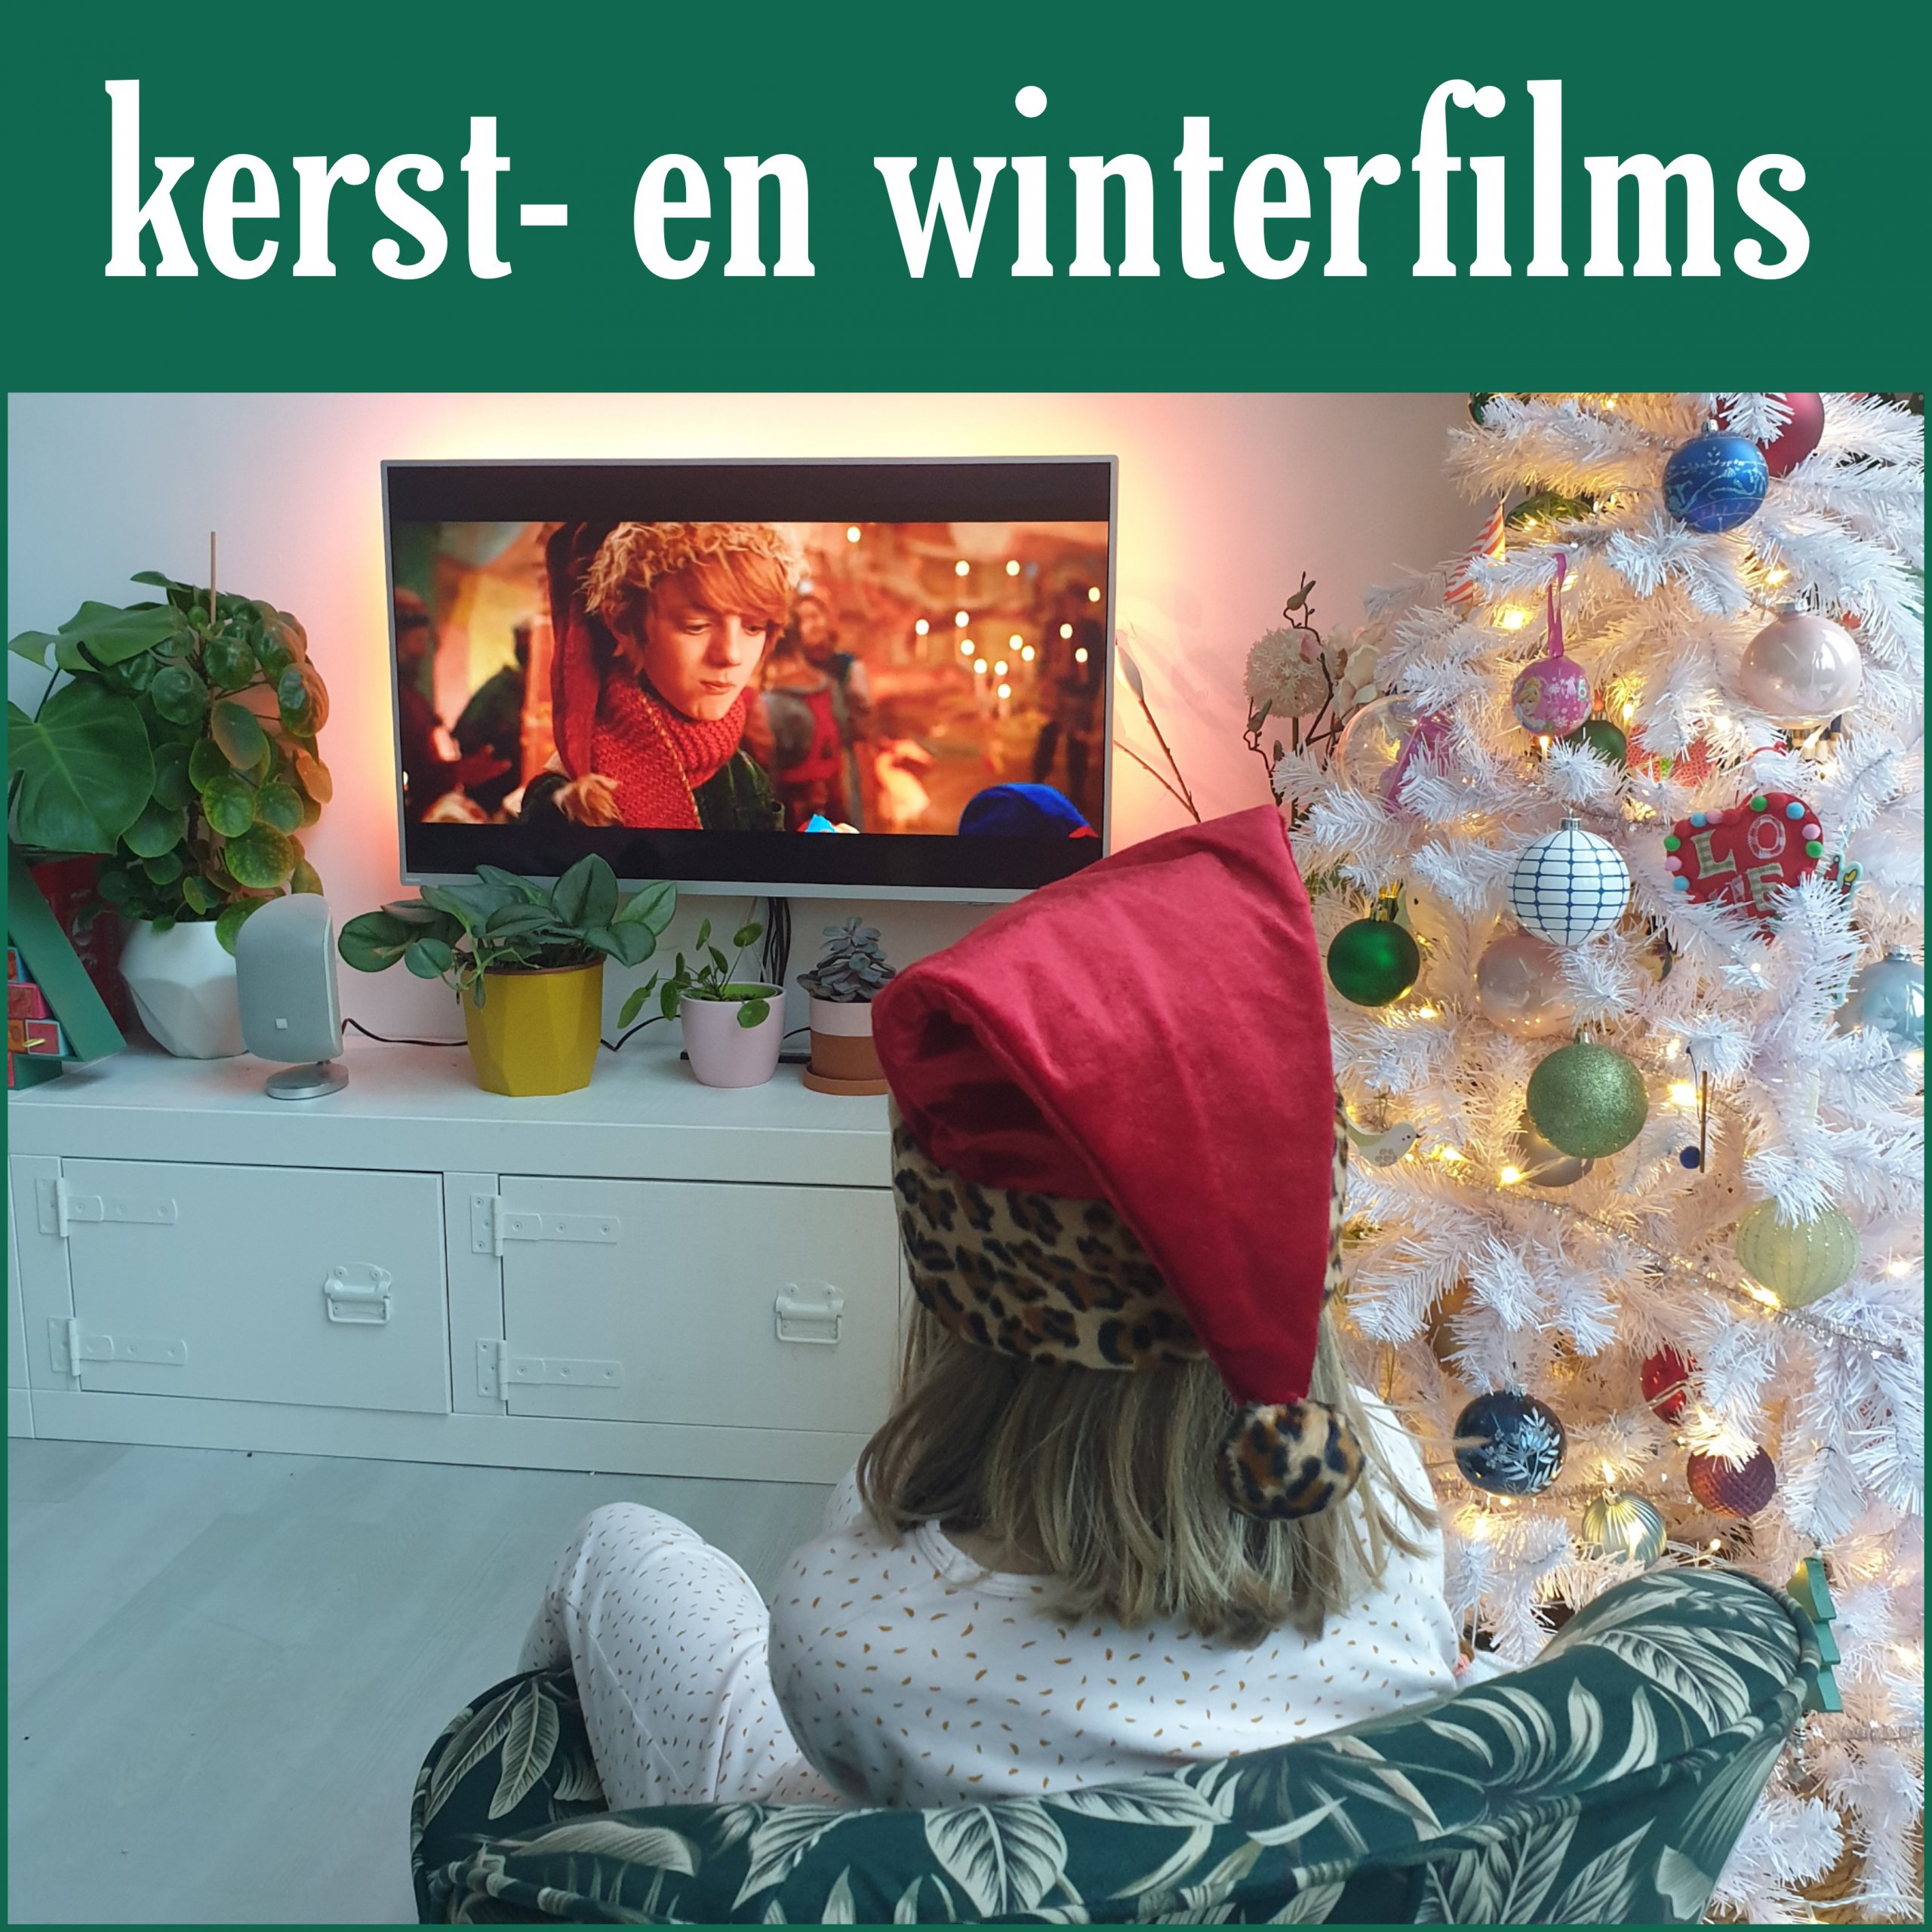 Kerstfilms: leuke kerst klassiekers en andere kinderfilms voor de winter. Zoals Een jongen met de naam Kerstmis is een indrukwekkend boek en nu ook verfilmd door Netflix.